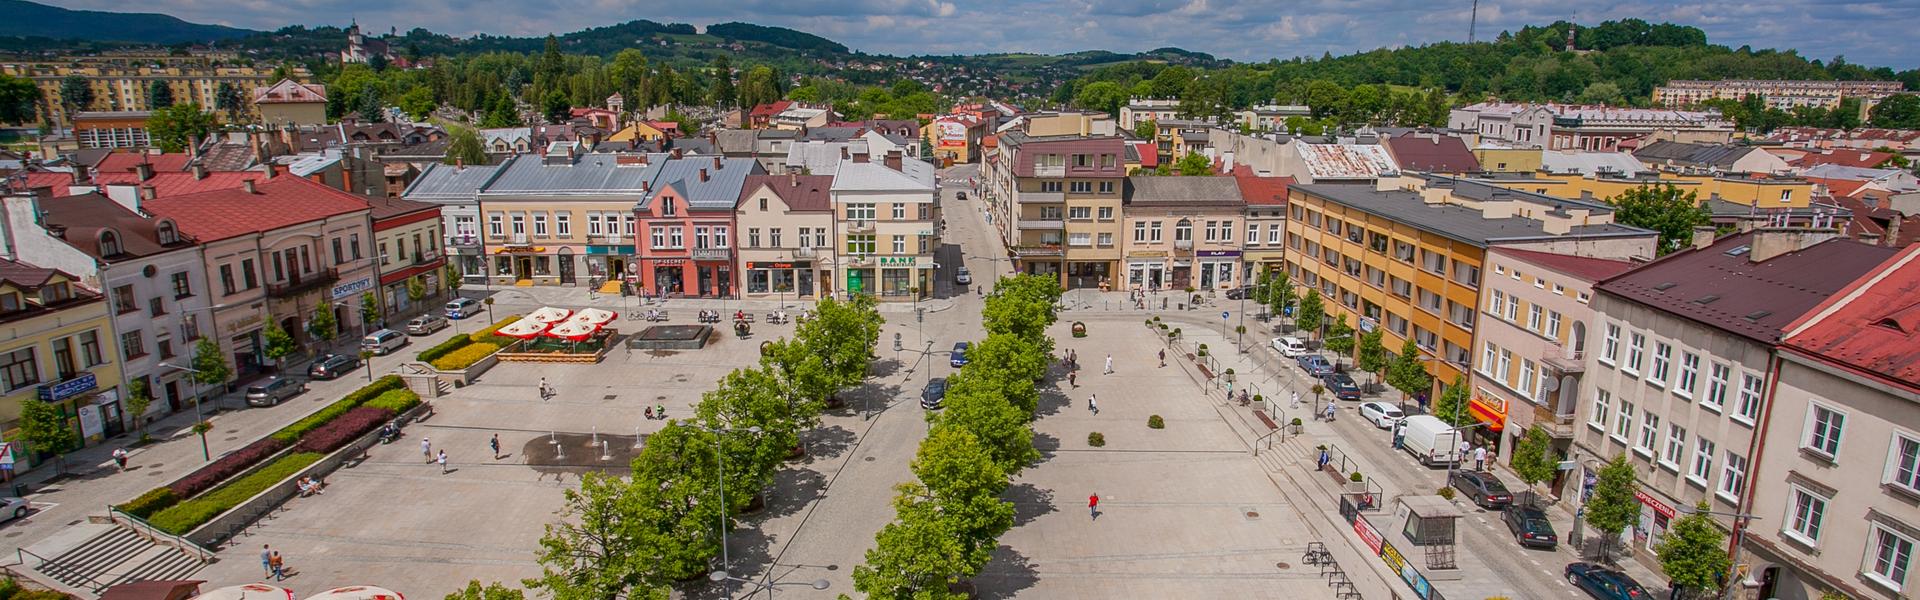 Rynek w Gorlicach, widok z lotu ptaka na kamienice, plac i alejki drzew.